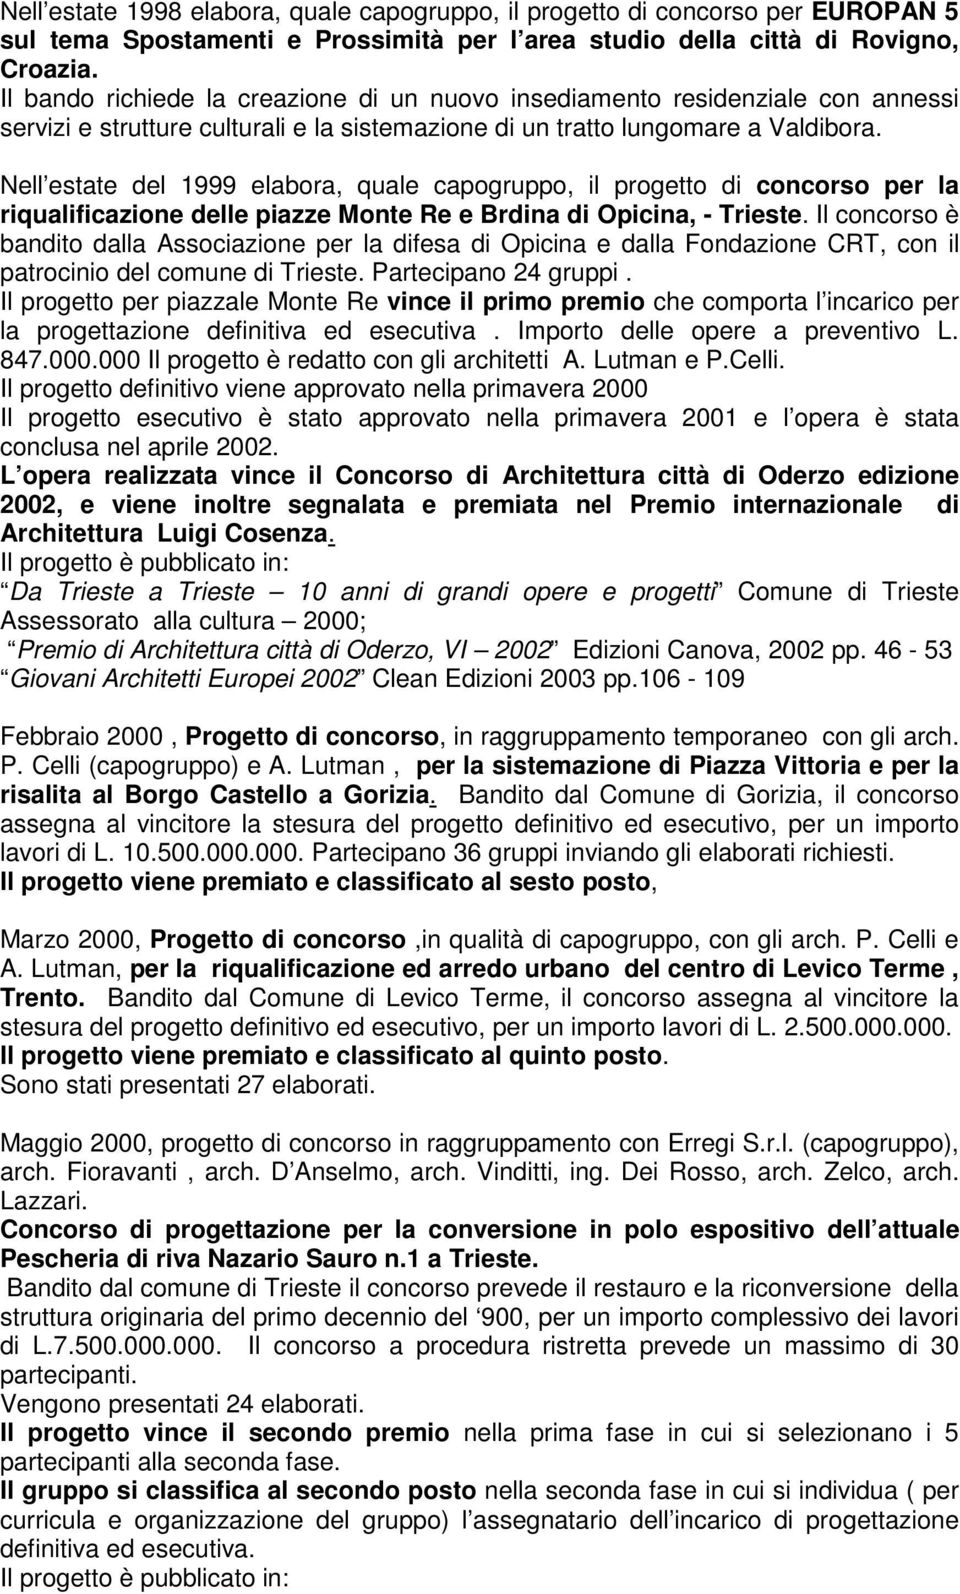 Nell estate del 1999 elabora, quale capogruppo, il progetto di concorso per la riqualificazione delle piazze Monte Re e Brdina di Opicina, - Trieste.